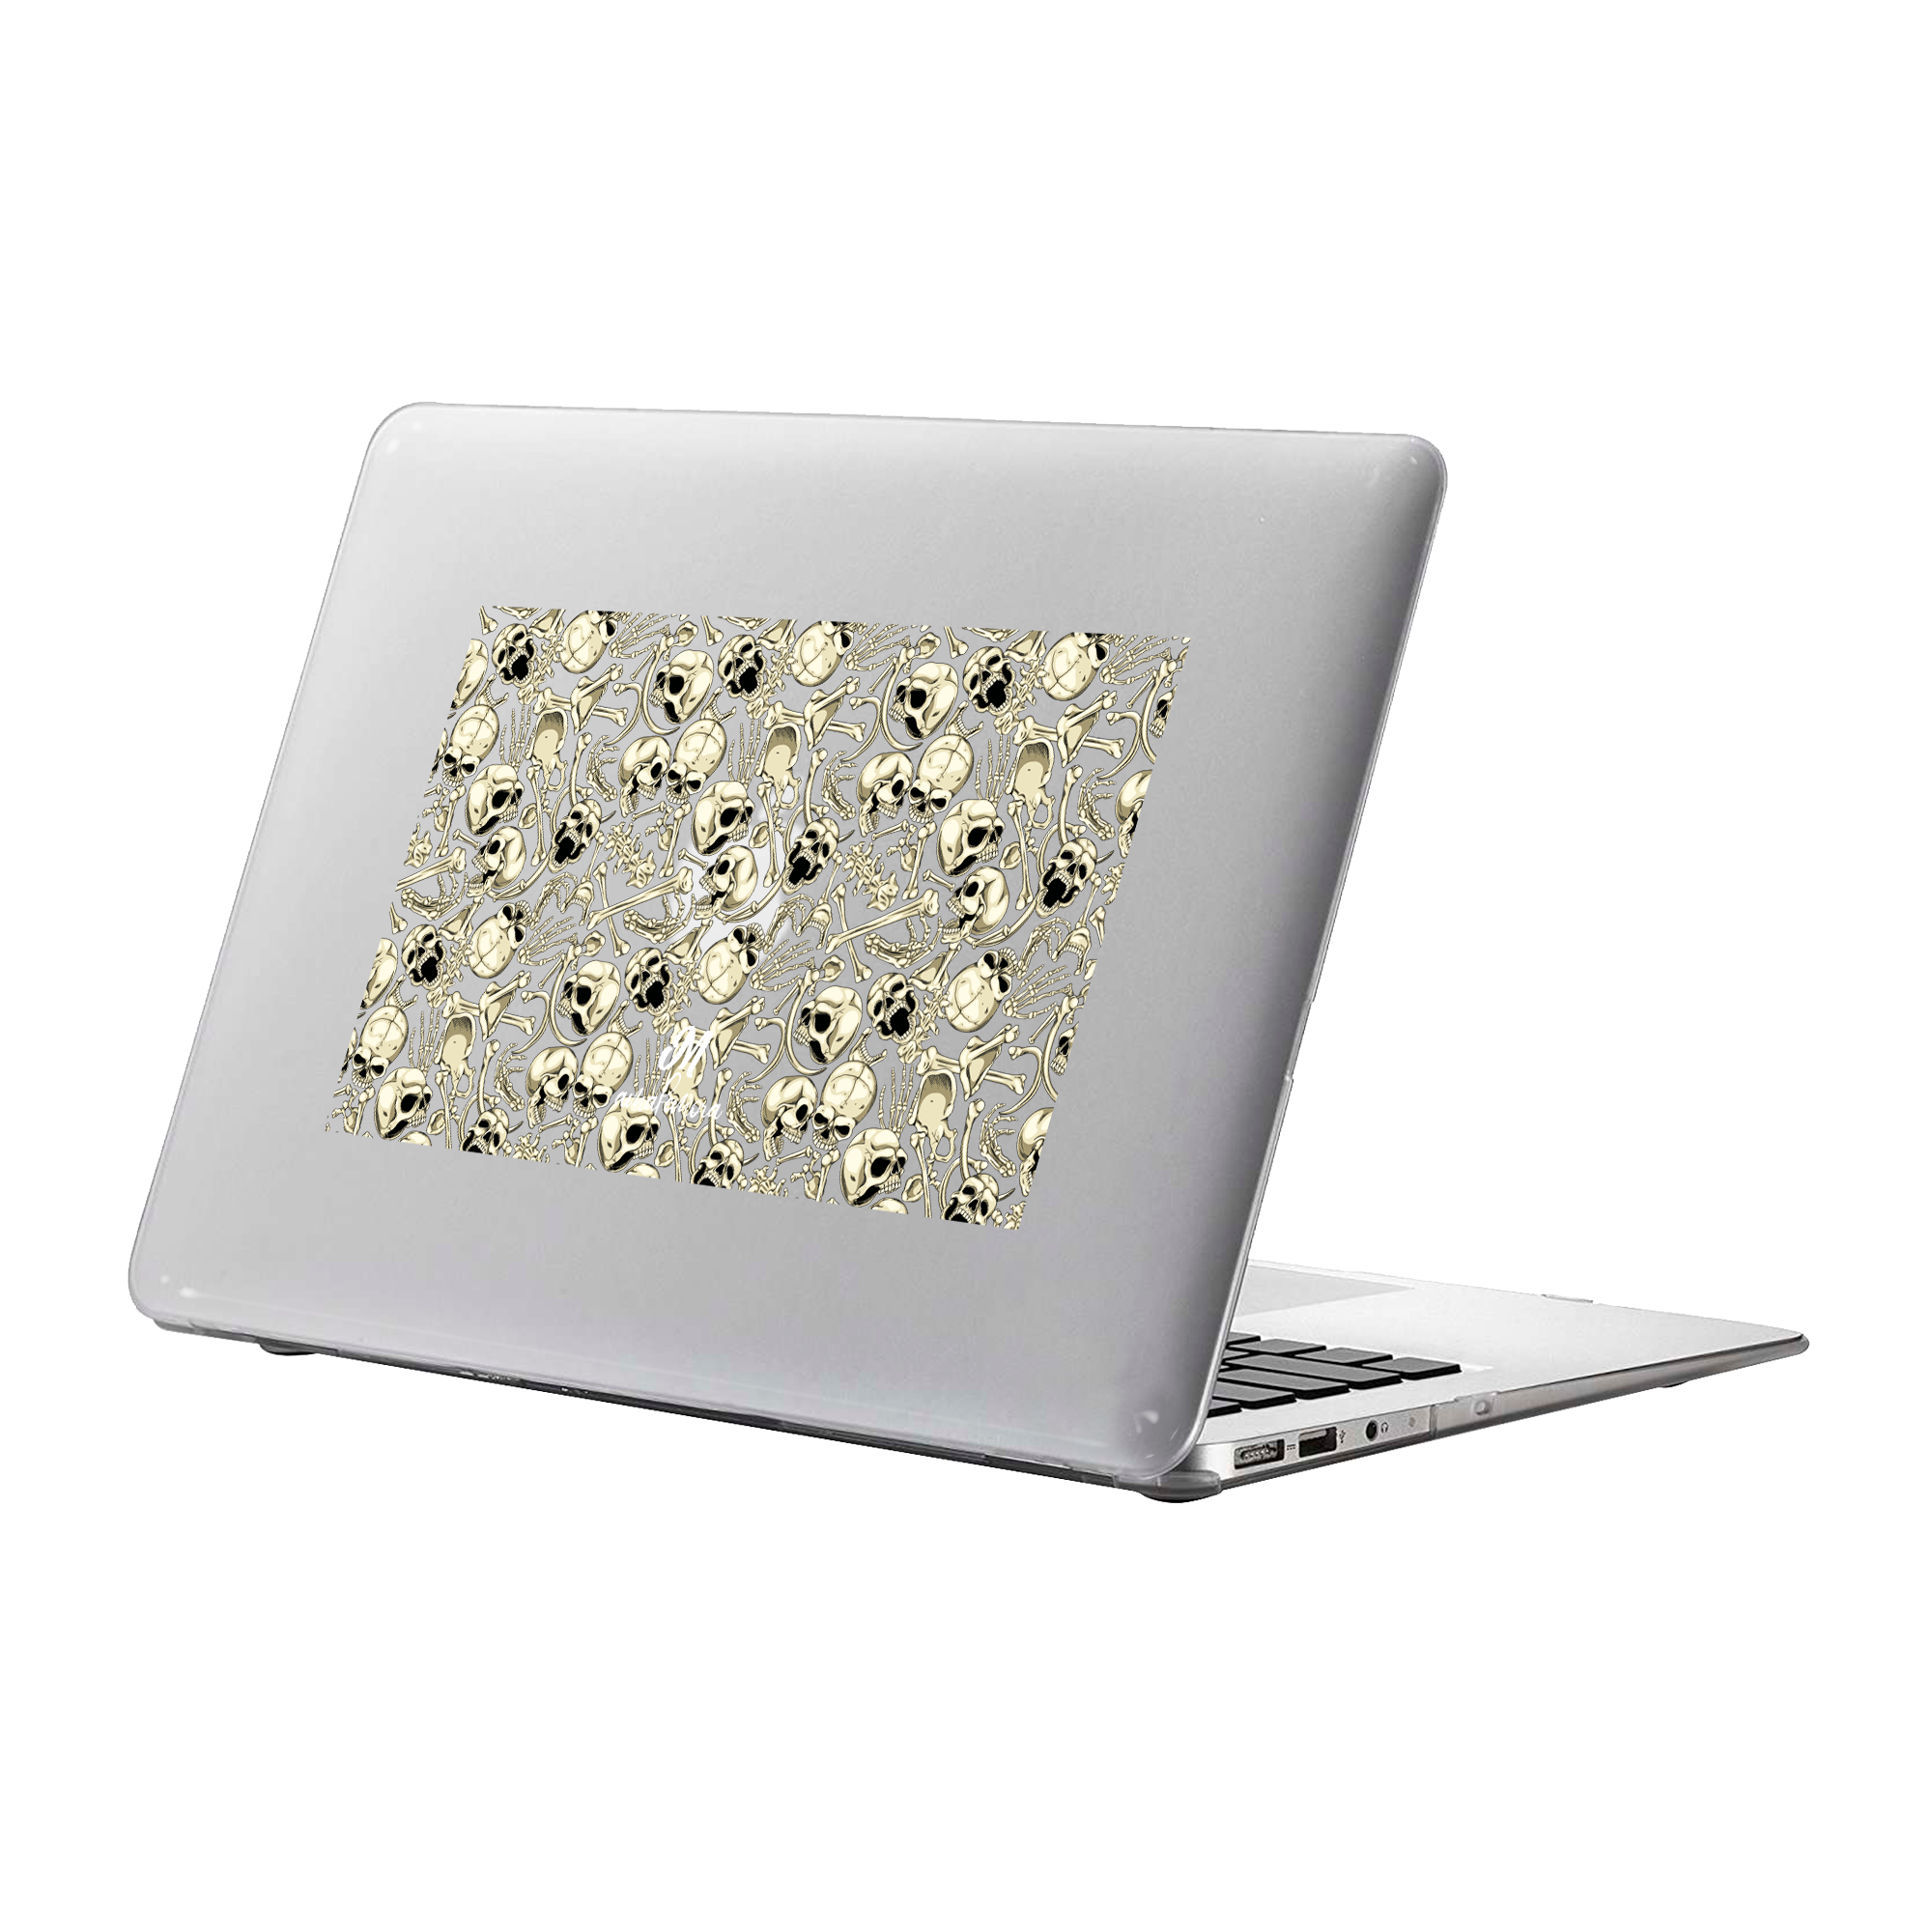 Bones MacBook Case - Mandala Cases